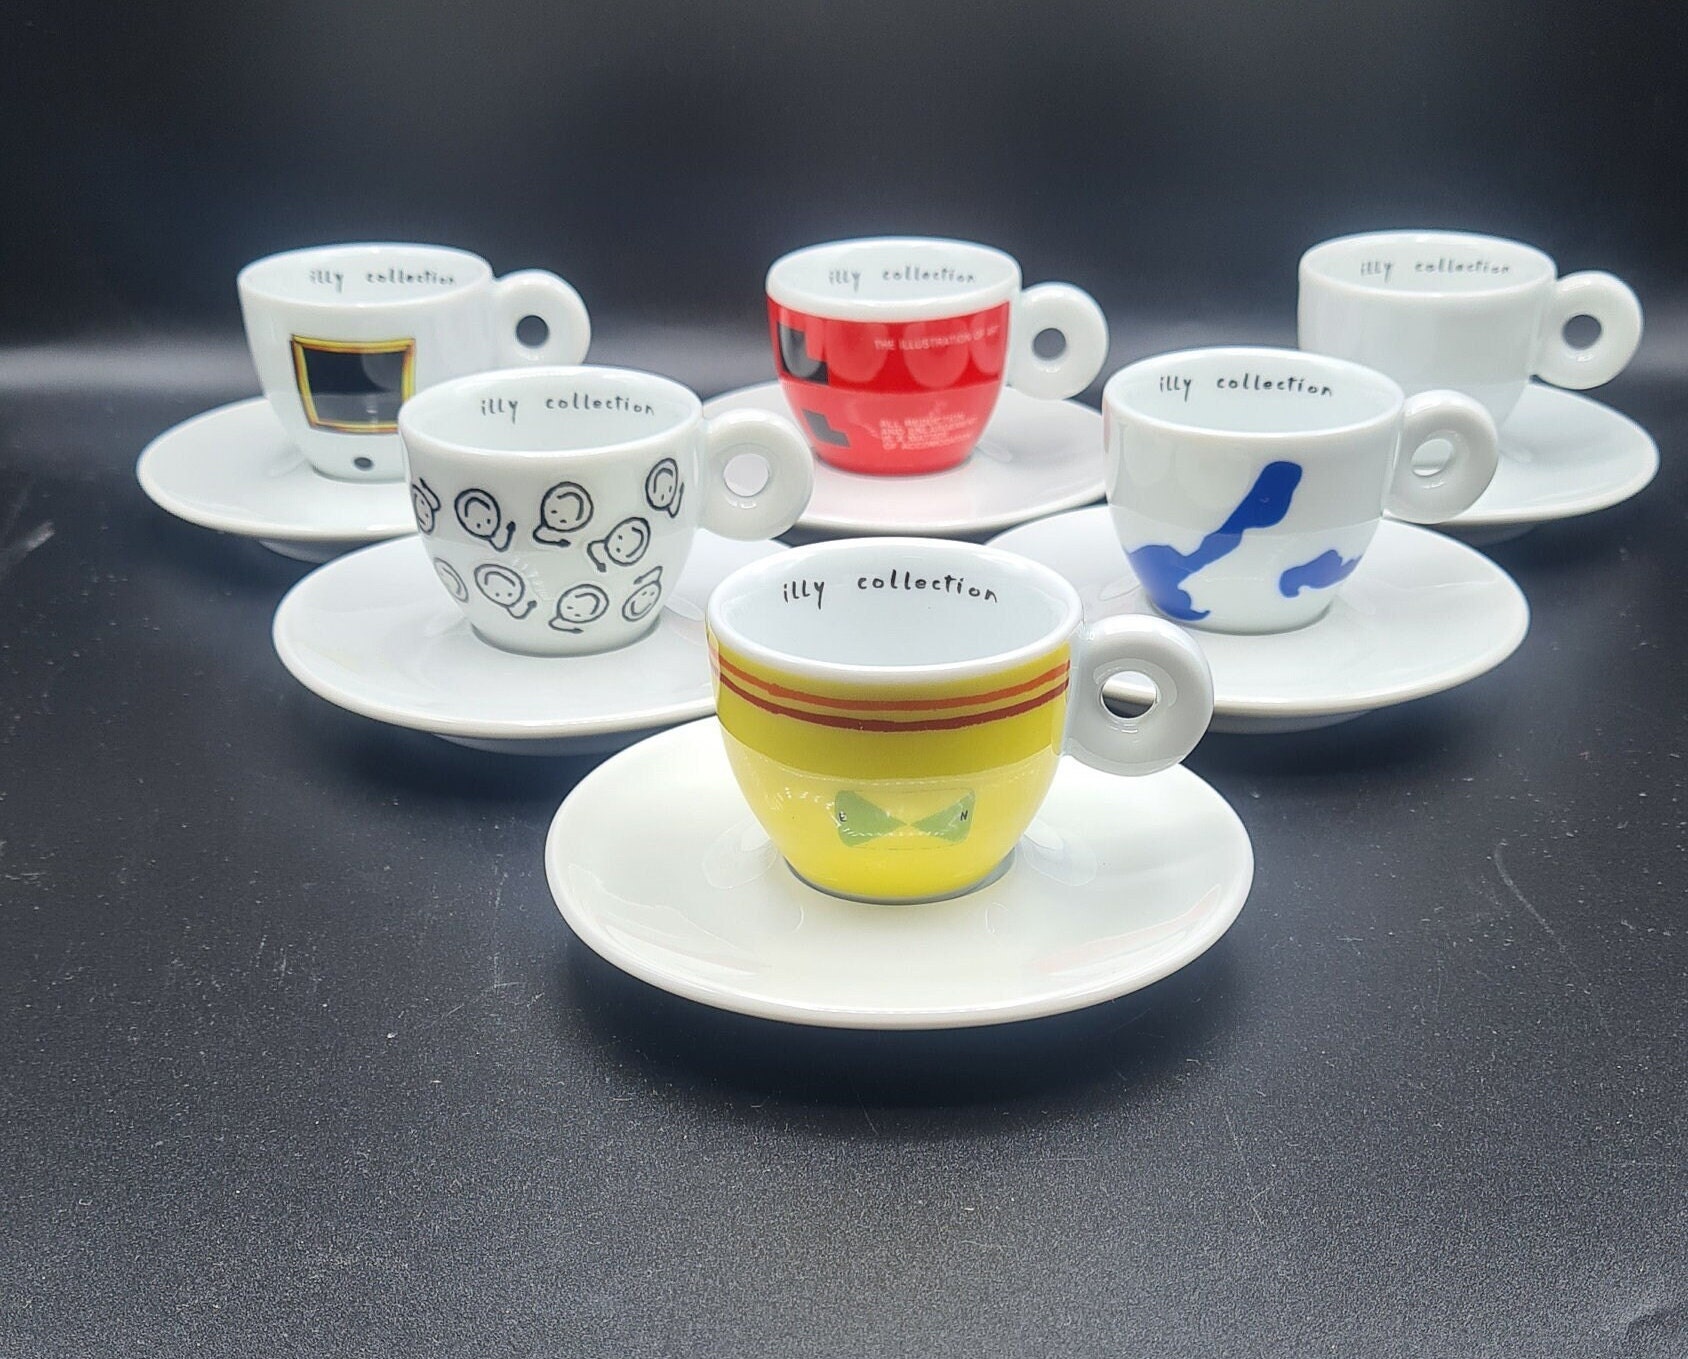 Tasses à café, mugs et accessoires Art Collection - illy